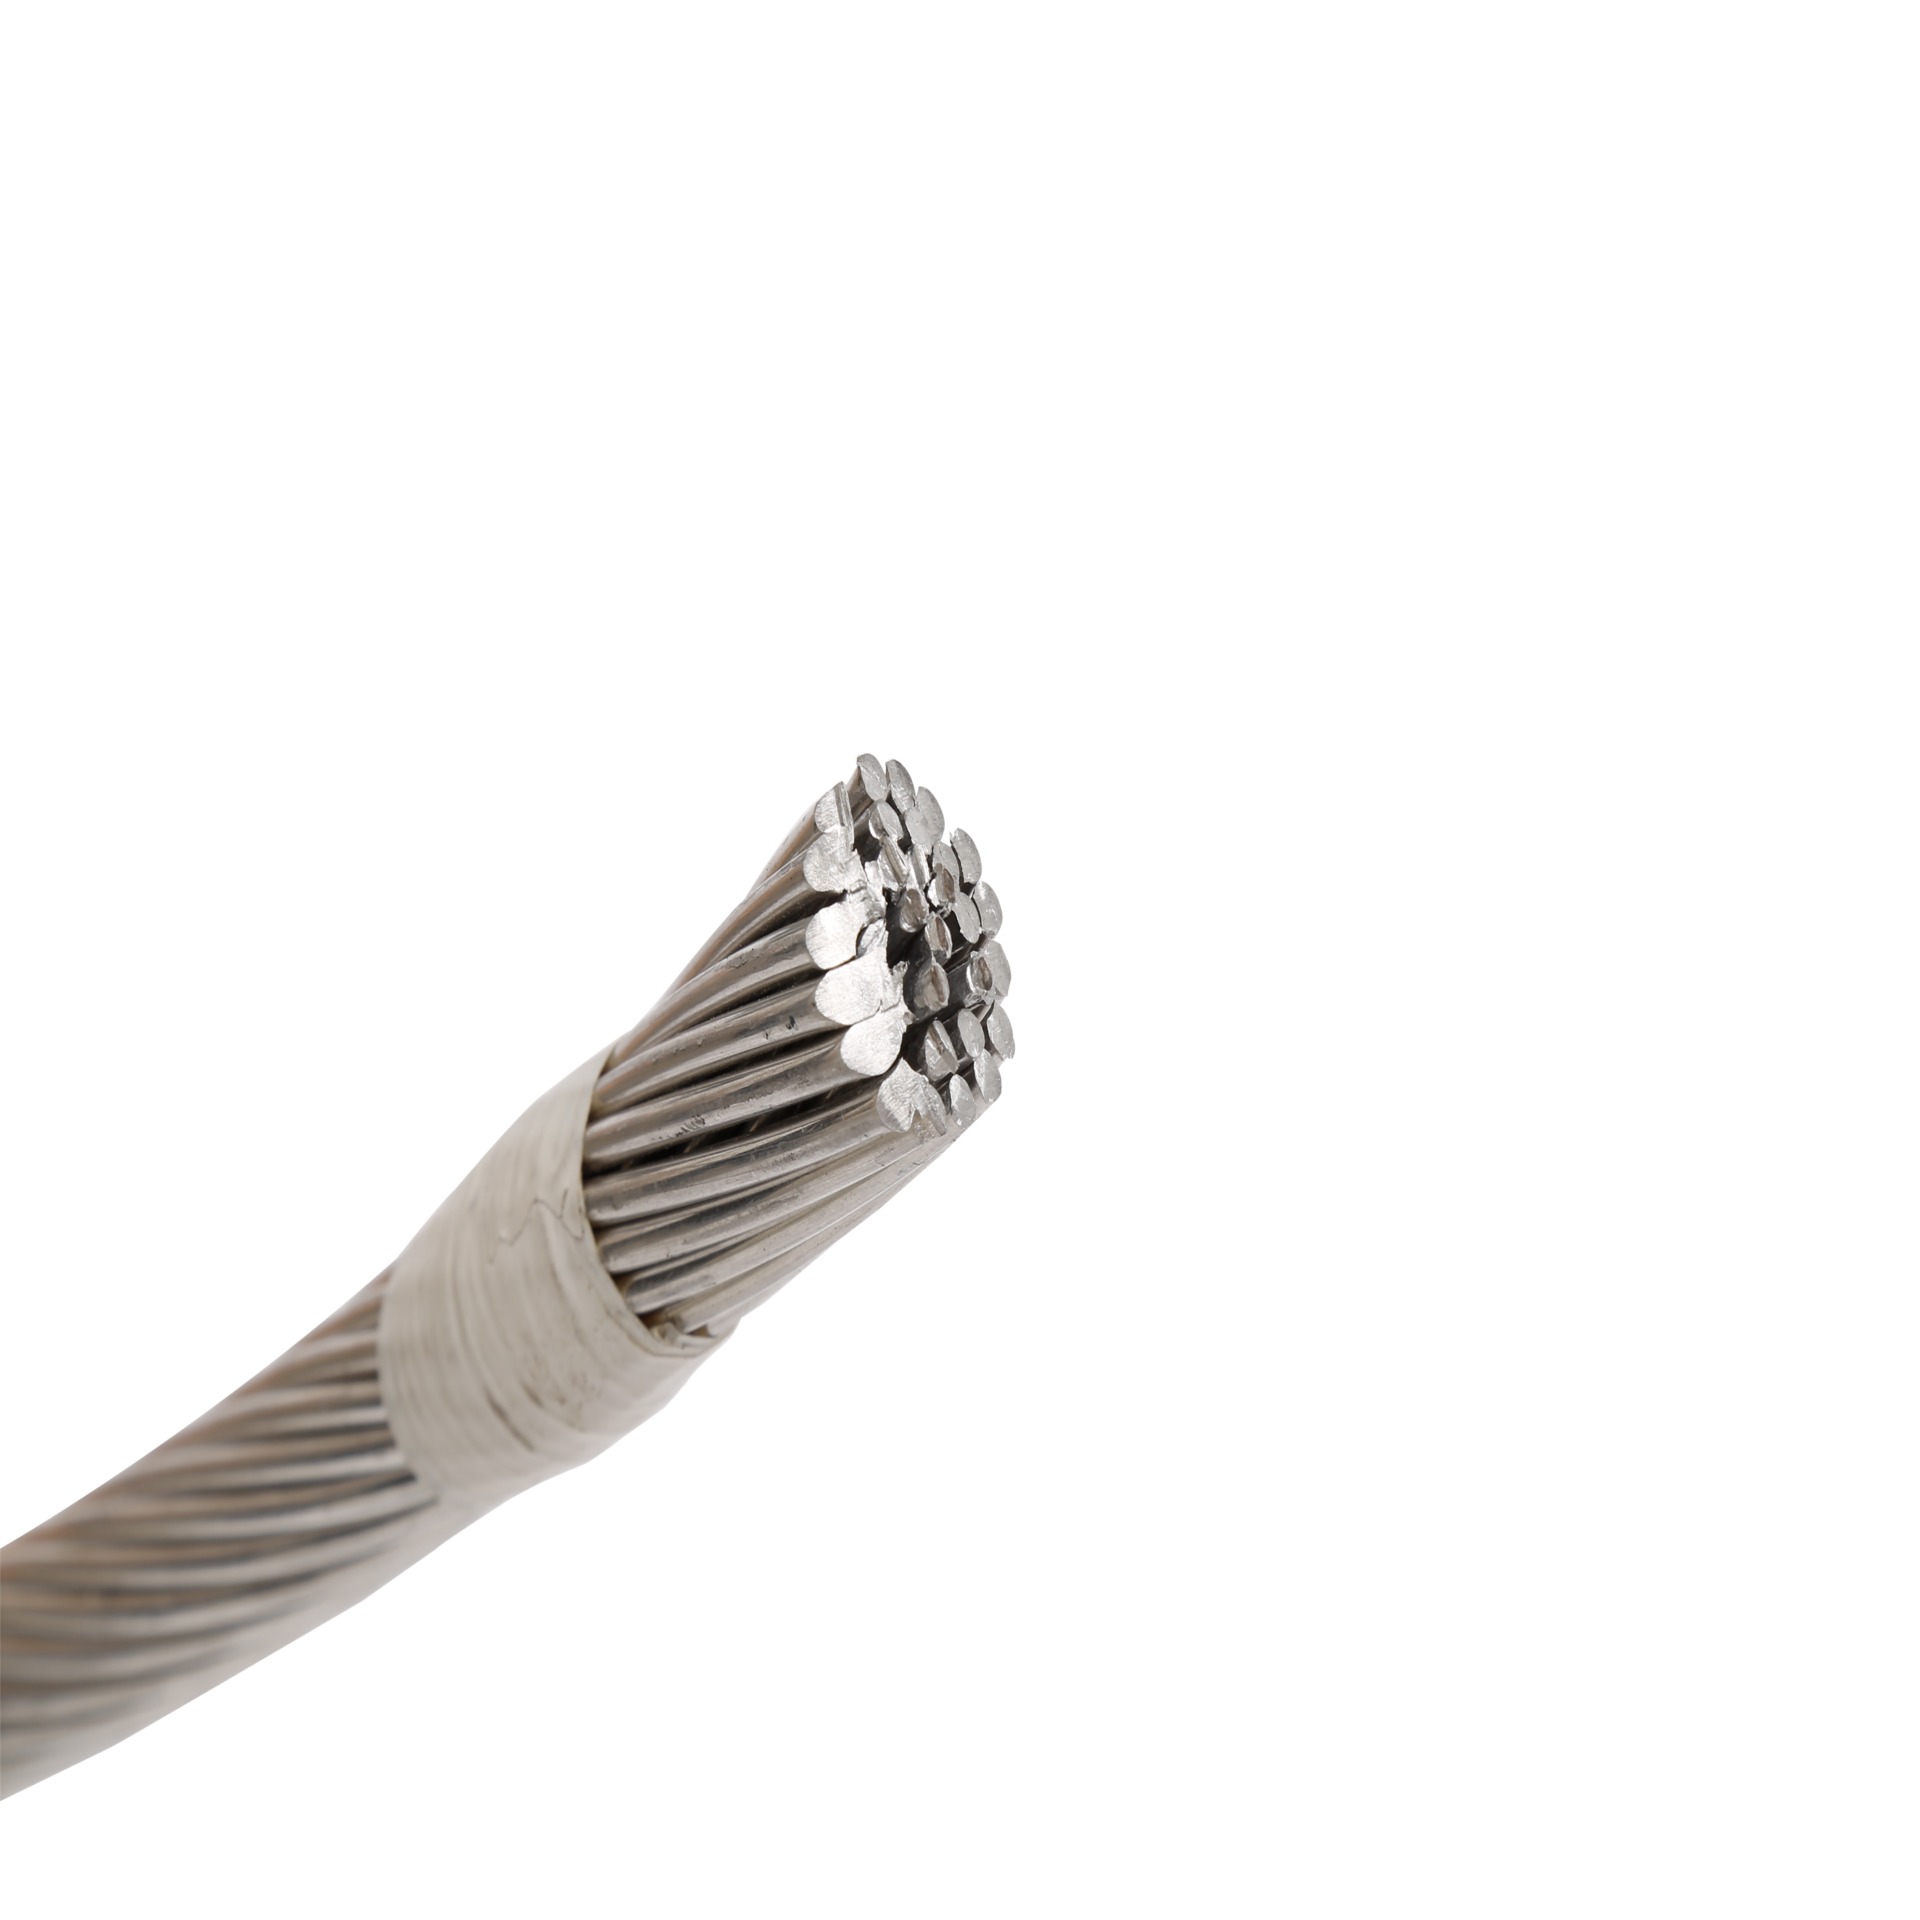 铝裸绞线 热镀锌钢绞线 1192.2   钢芯铝绞线 1kv 架空绝缘导线